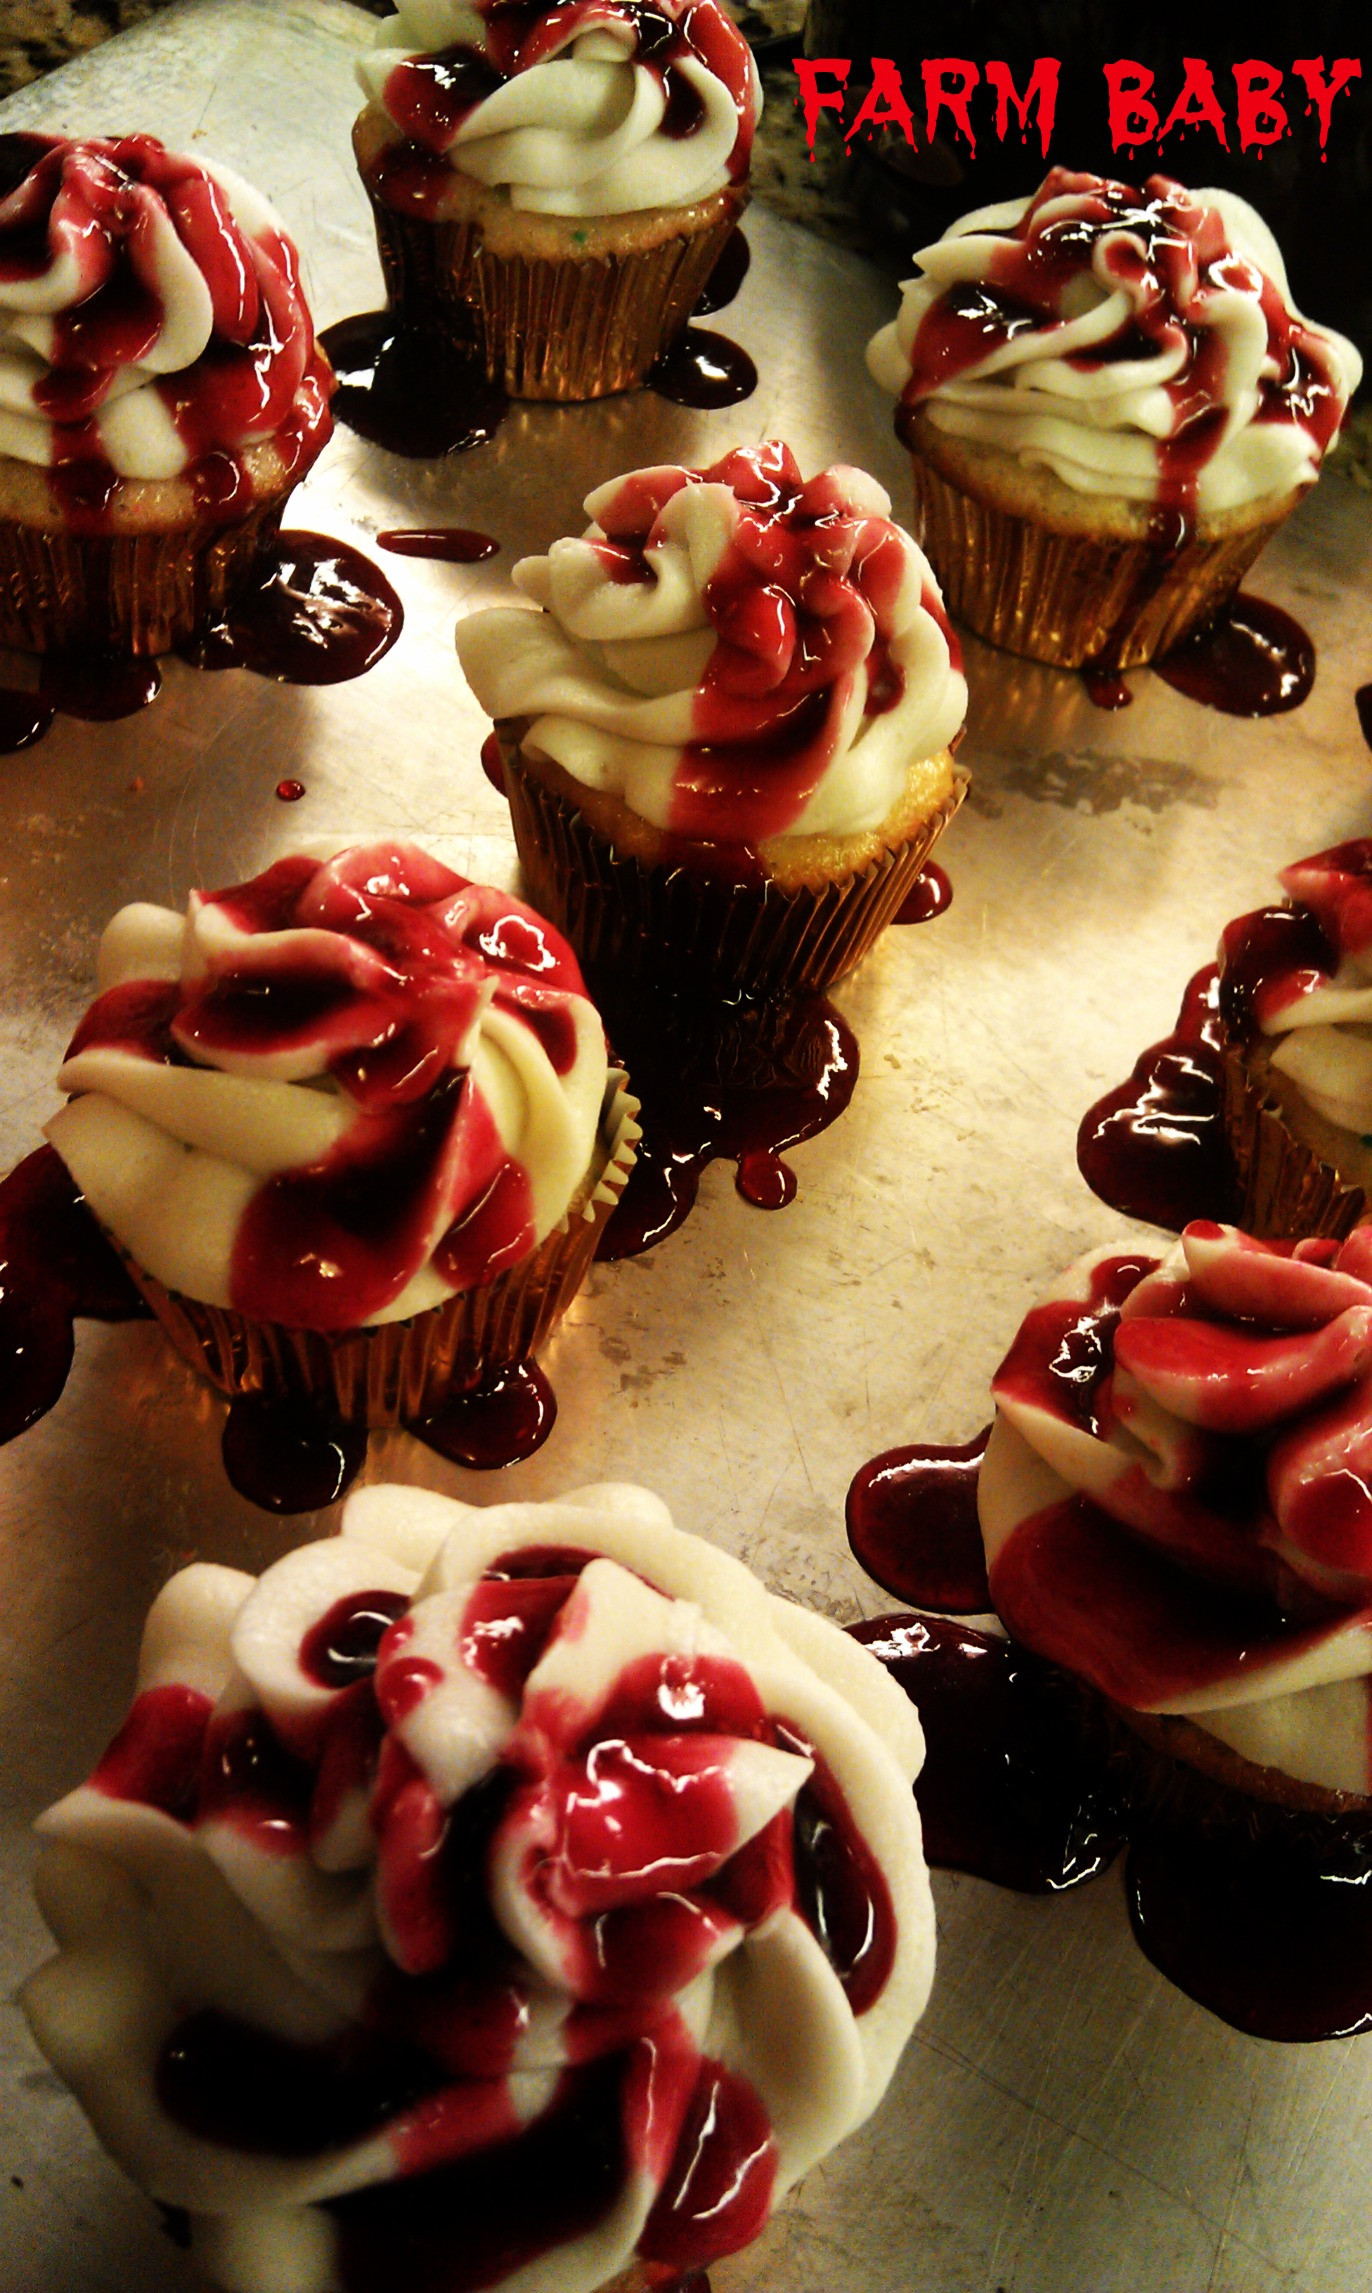 Bloody Halloween Cupcakes
 “Bloody” Halloween Cupcakes